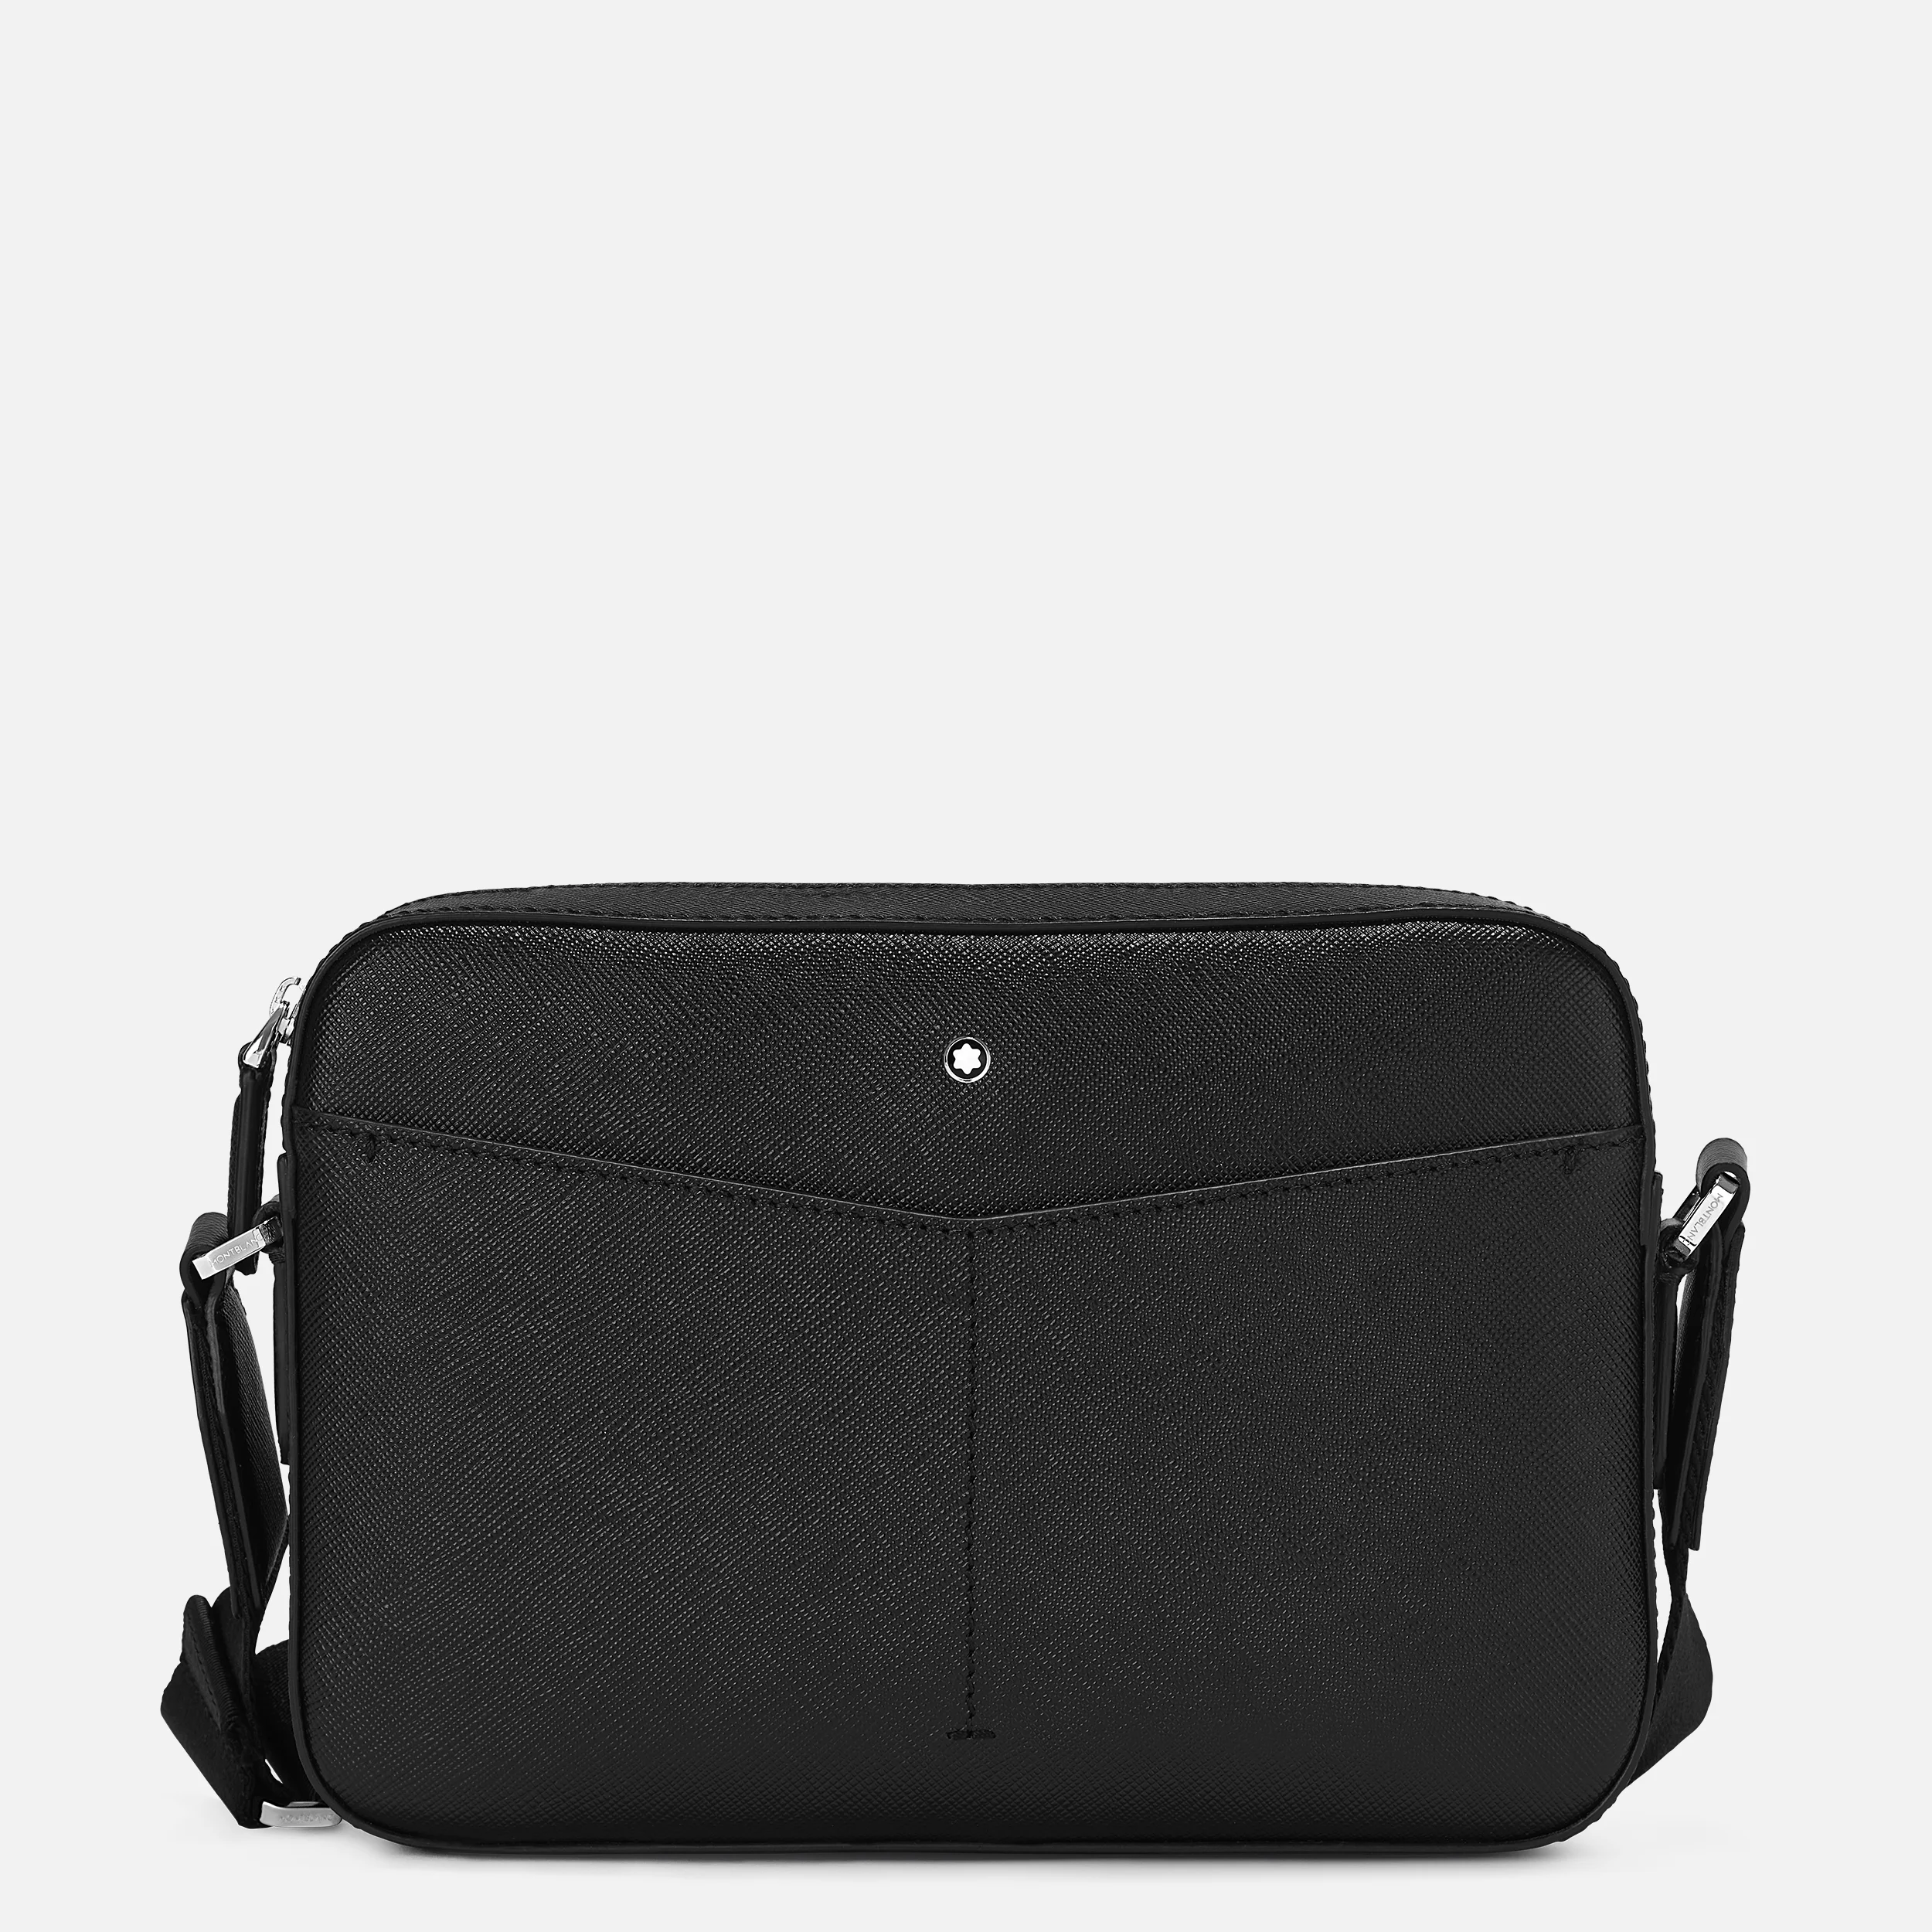 MONTBLANC MONTBLANC SARTORIAL CLUTCH POCHETTE, Black Men's Handbag